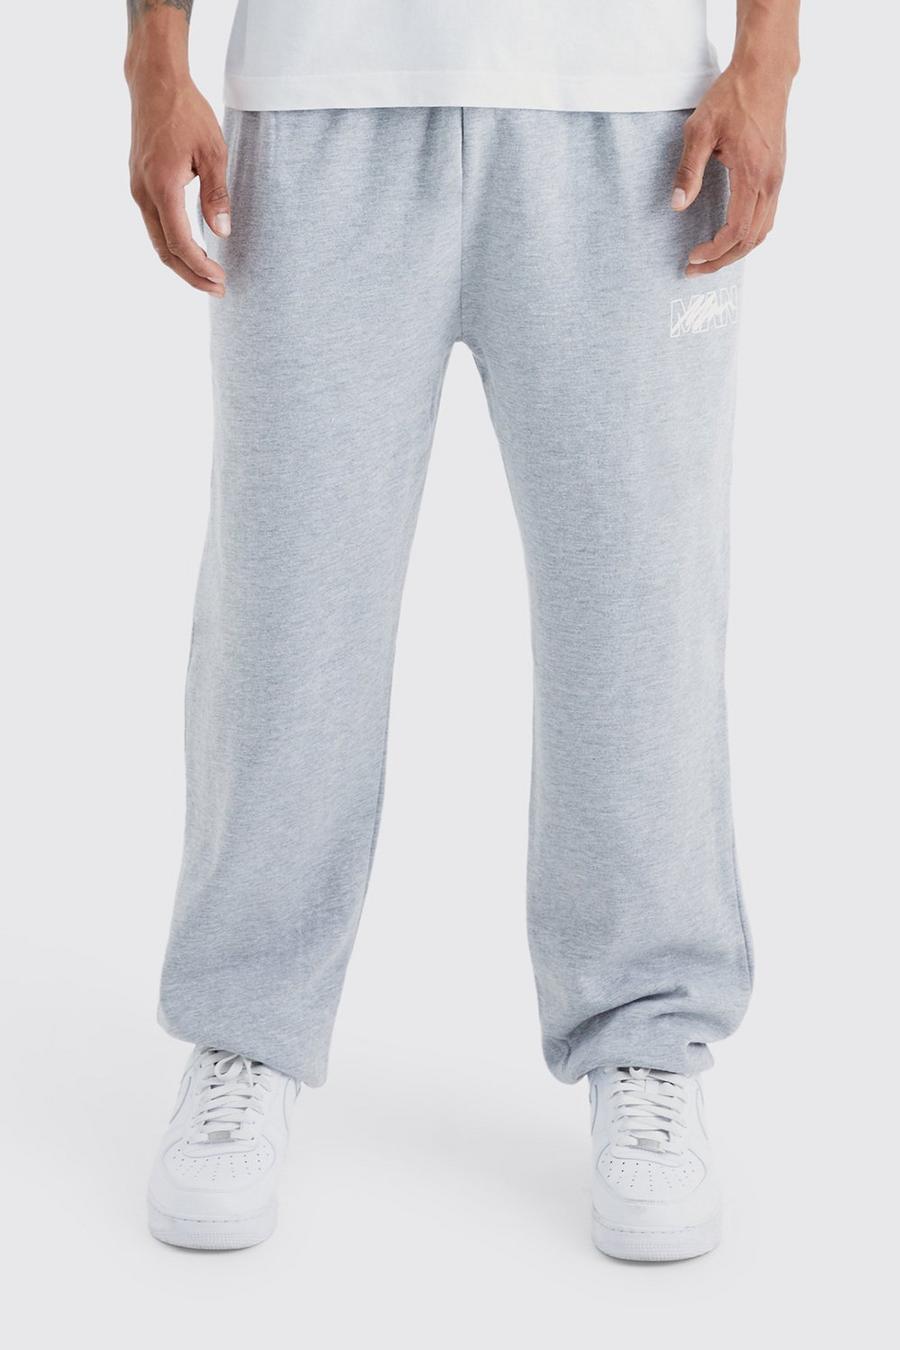 Pantalón deportivo oversize con firma MAN sobreteñido, Grey